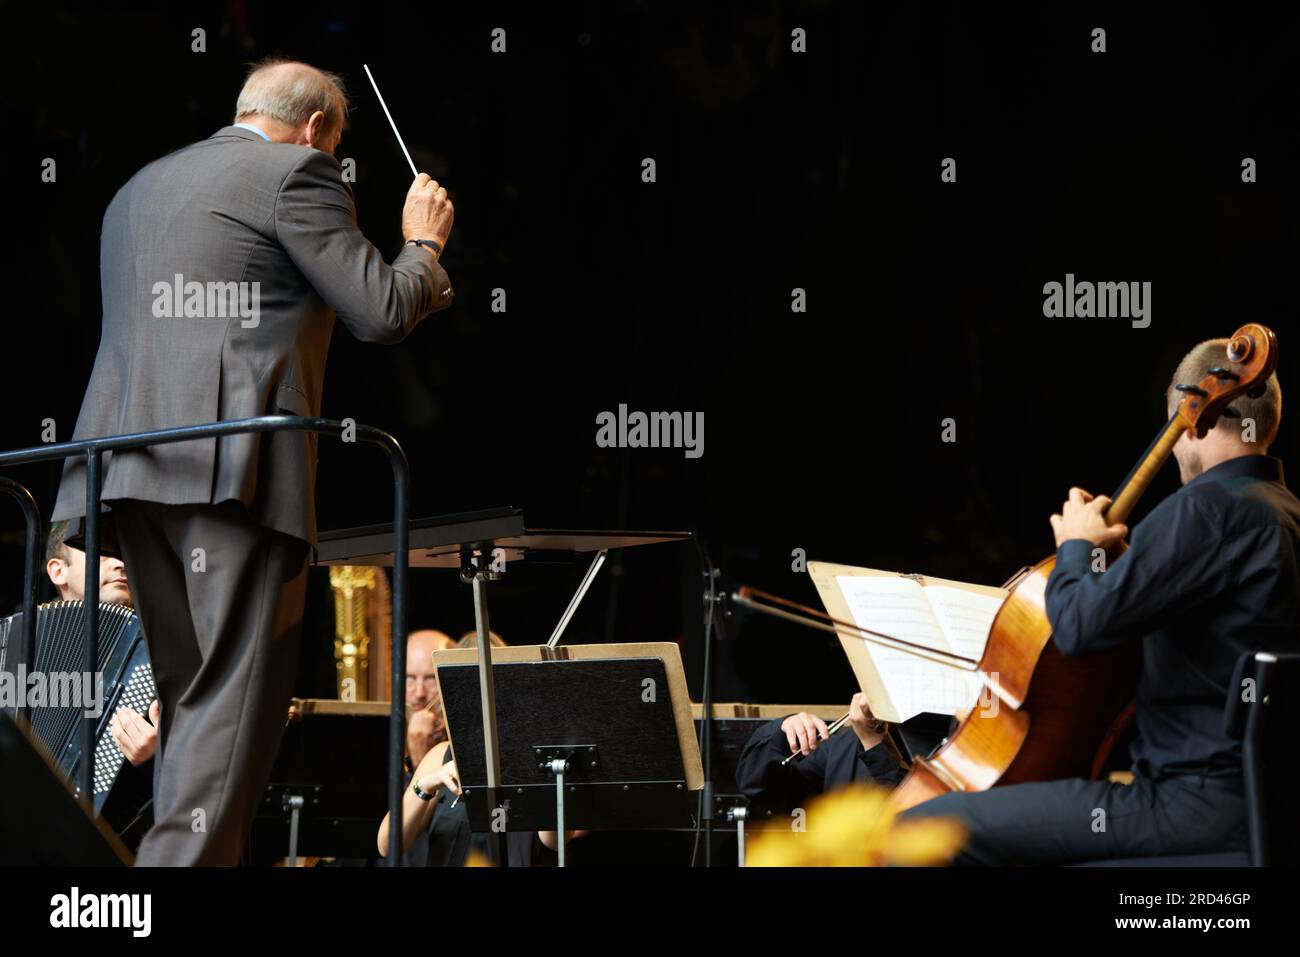 Ich führe das Orchester in einer Symphonie. Aufnahme eines Dirigenten und Musikers während eines Orchesterkonzerns. Stockfoto